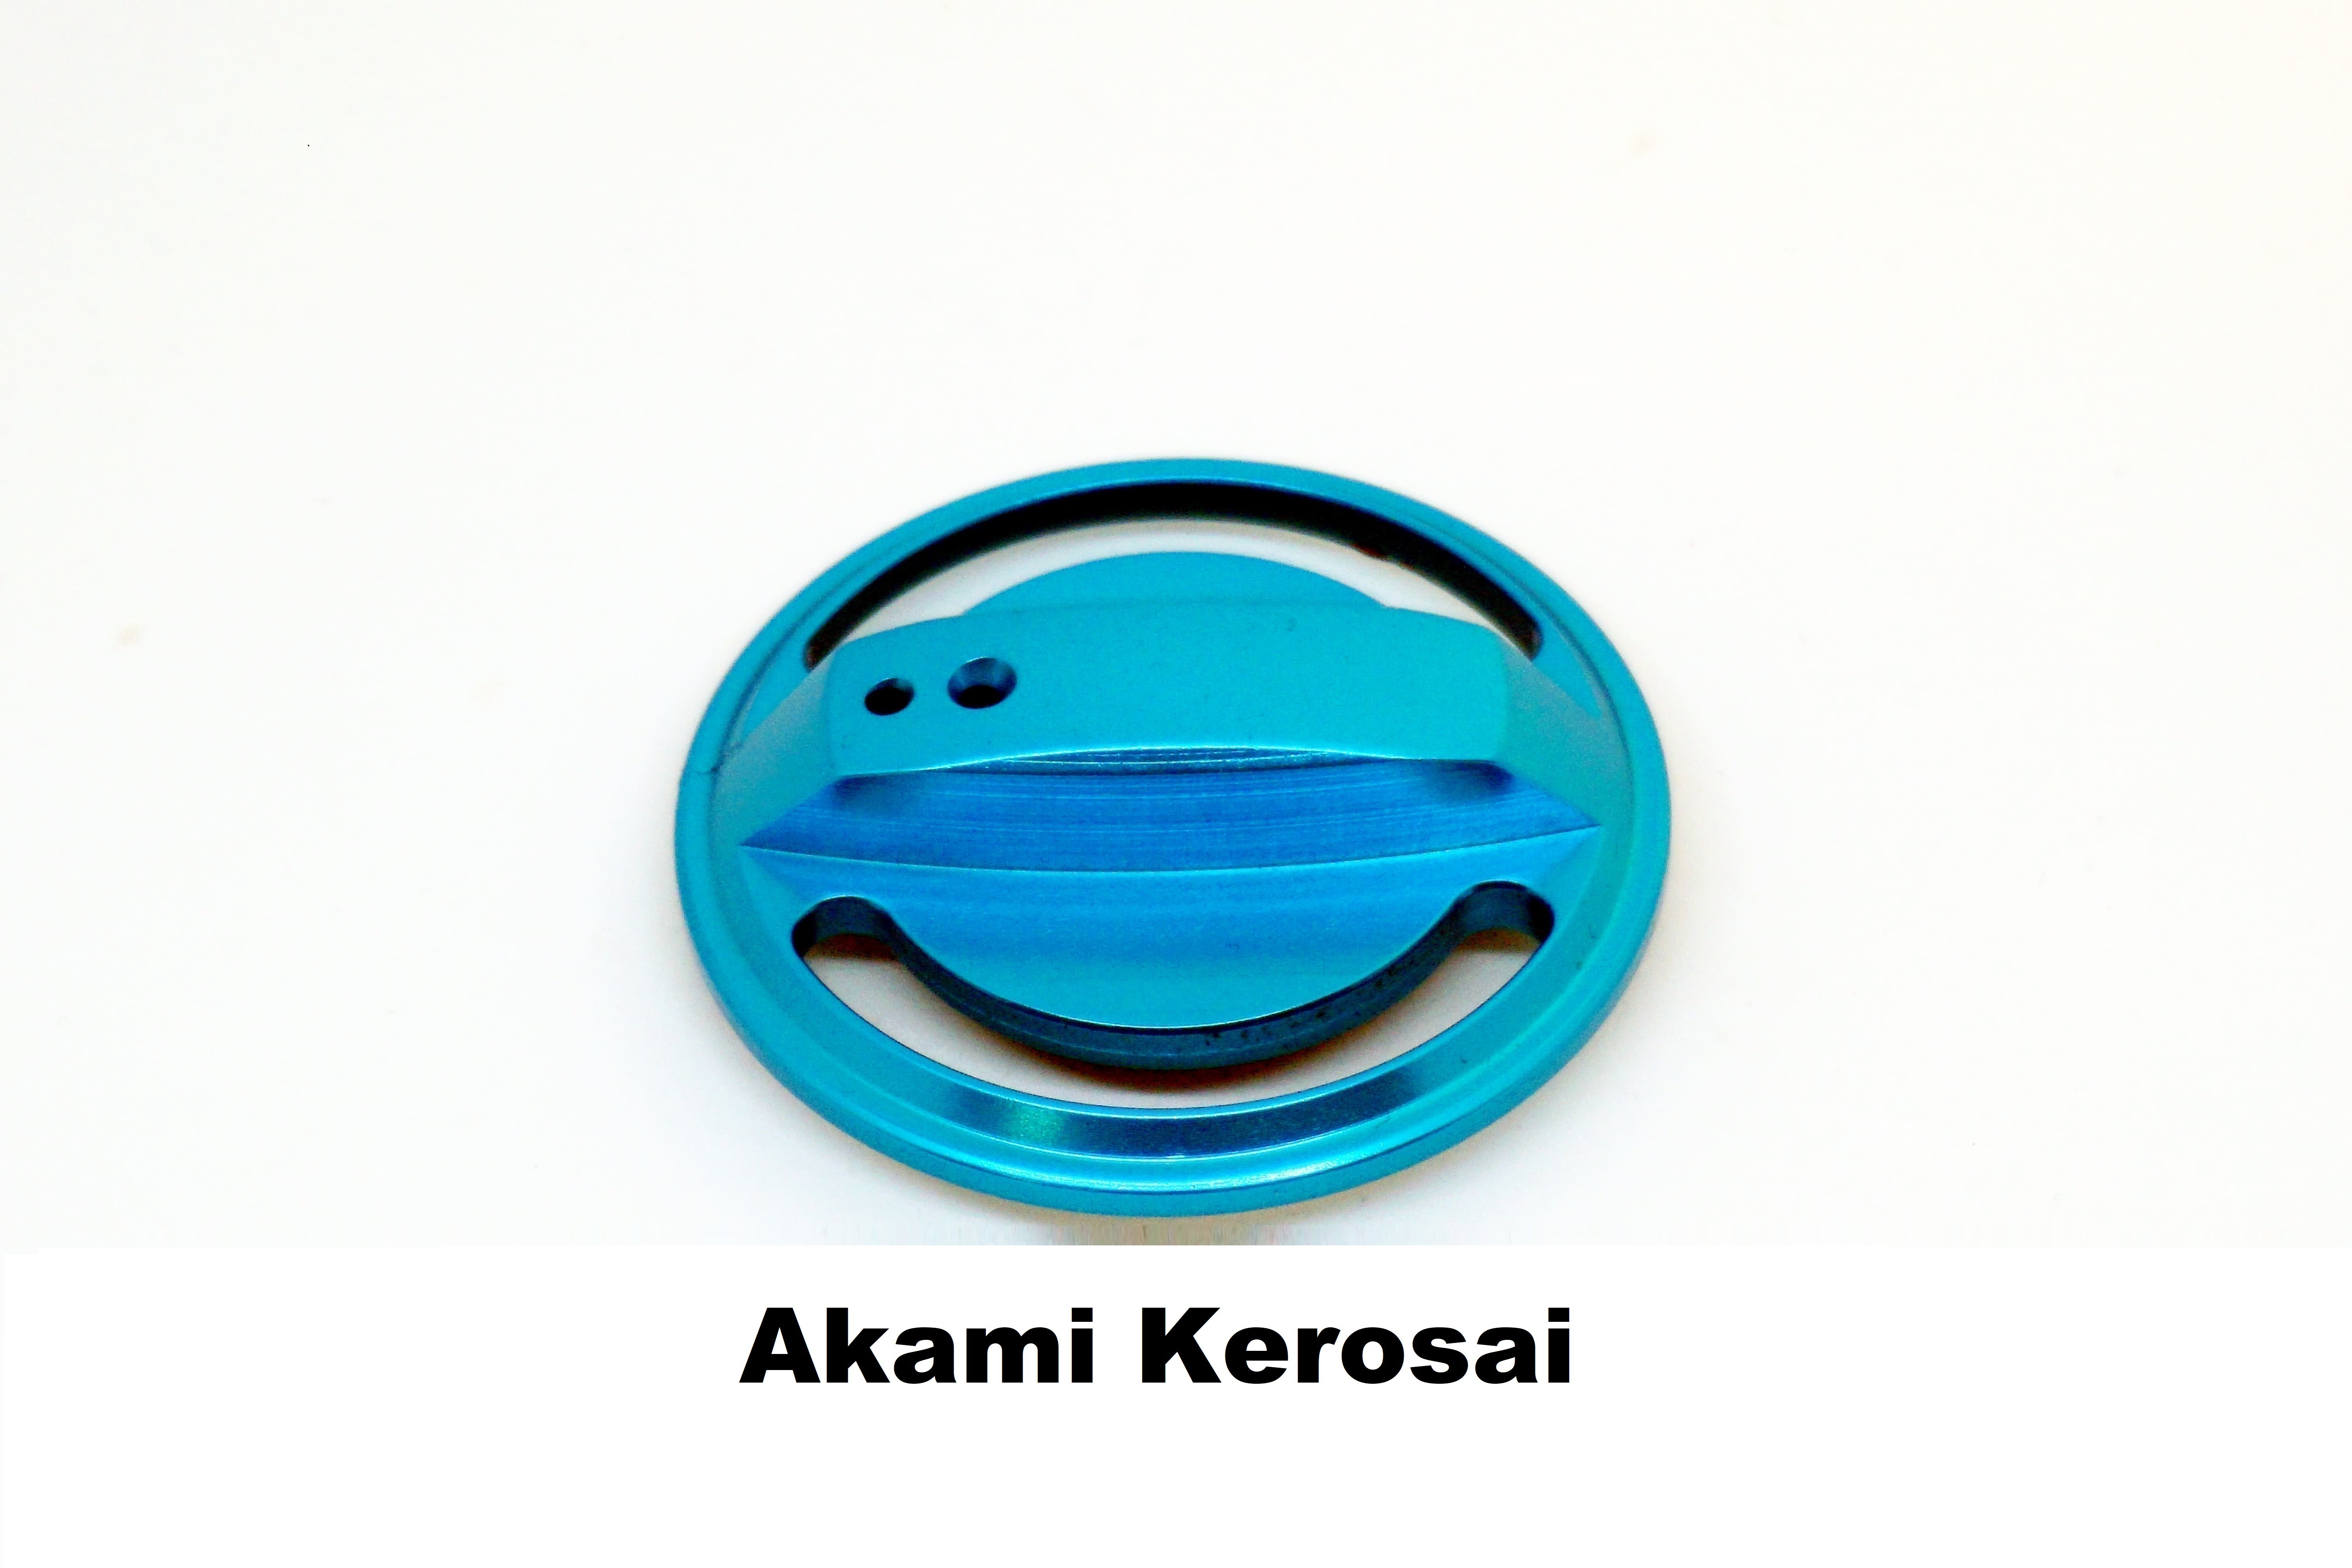 Spina del Freno Akami Kerosai